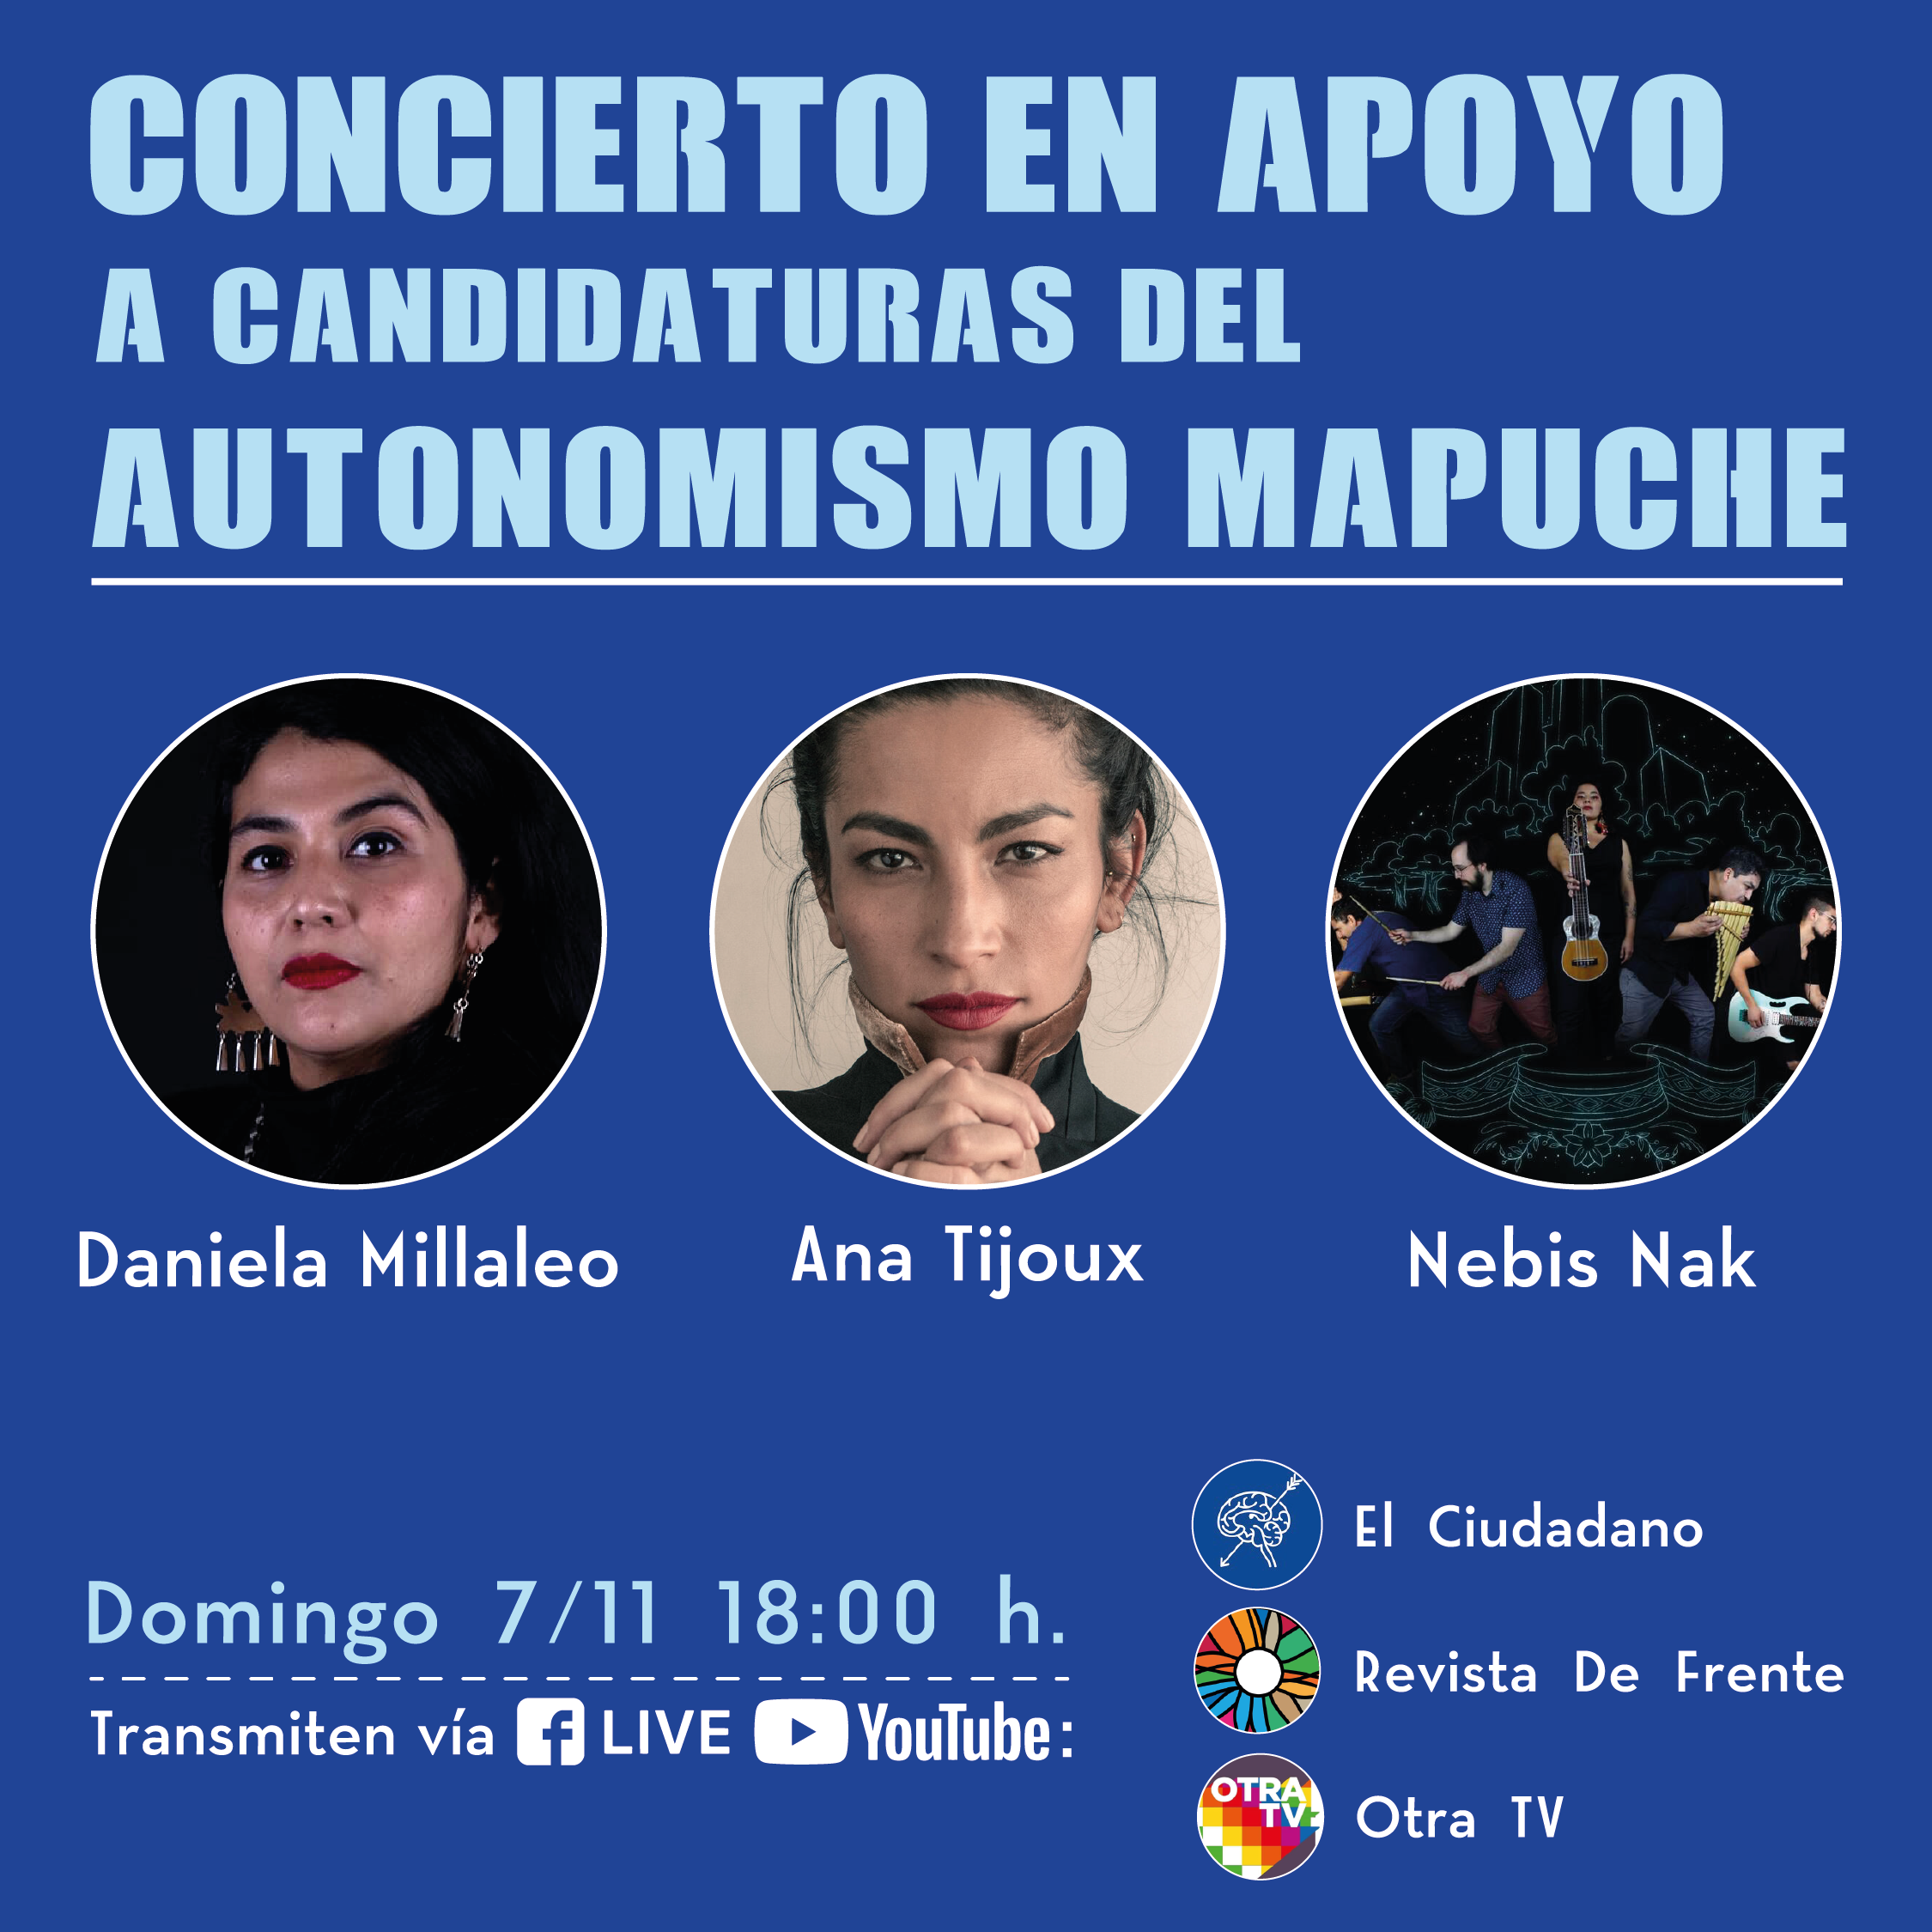 Artistas se unen en concierto para apoyar a candidatas del autonomismo mapuche